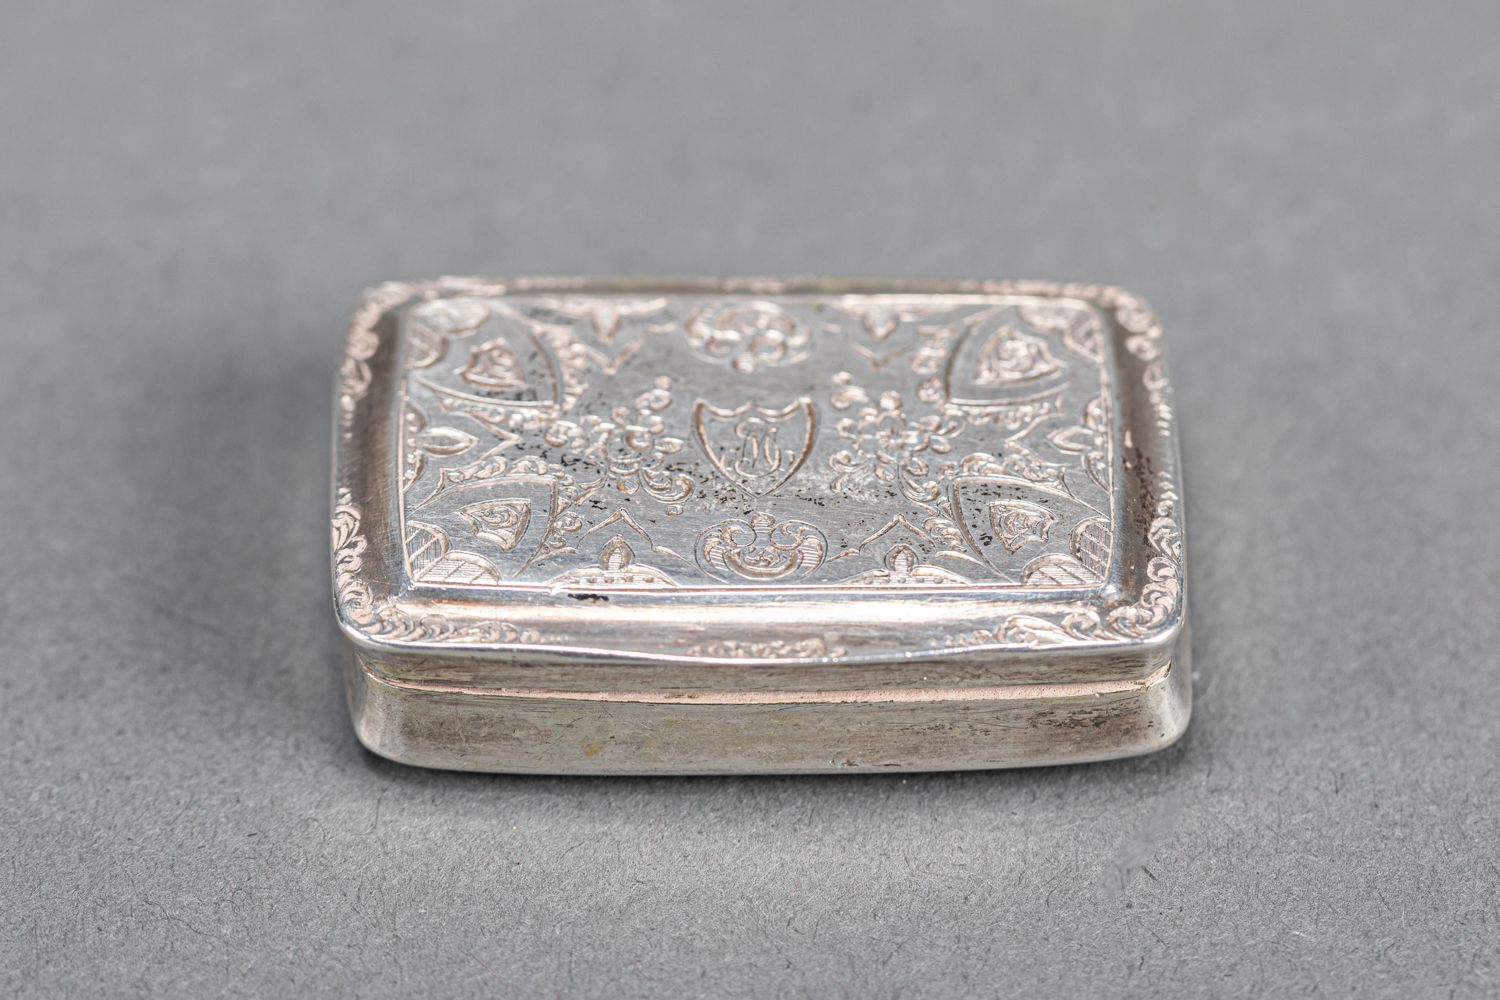 Null 银质鼻烟壶，里面是vermeil；比利时19世纪；IS大师签名。22g.4X2.7厘米